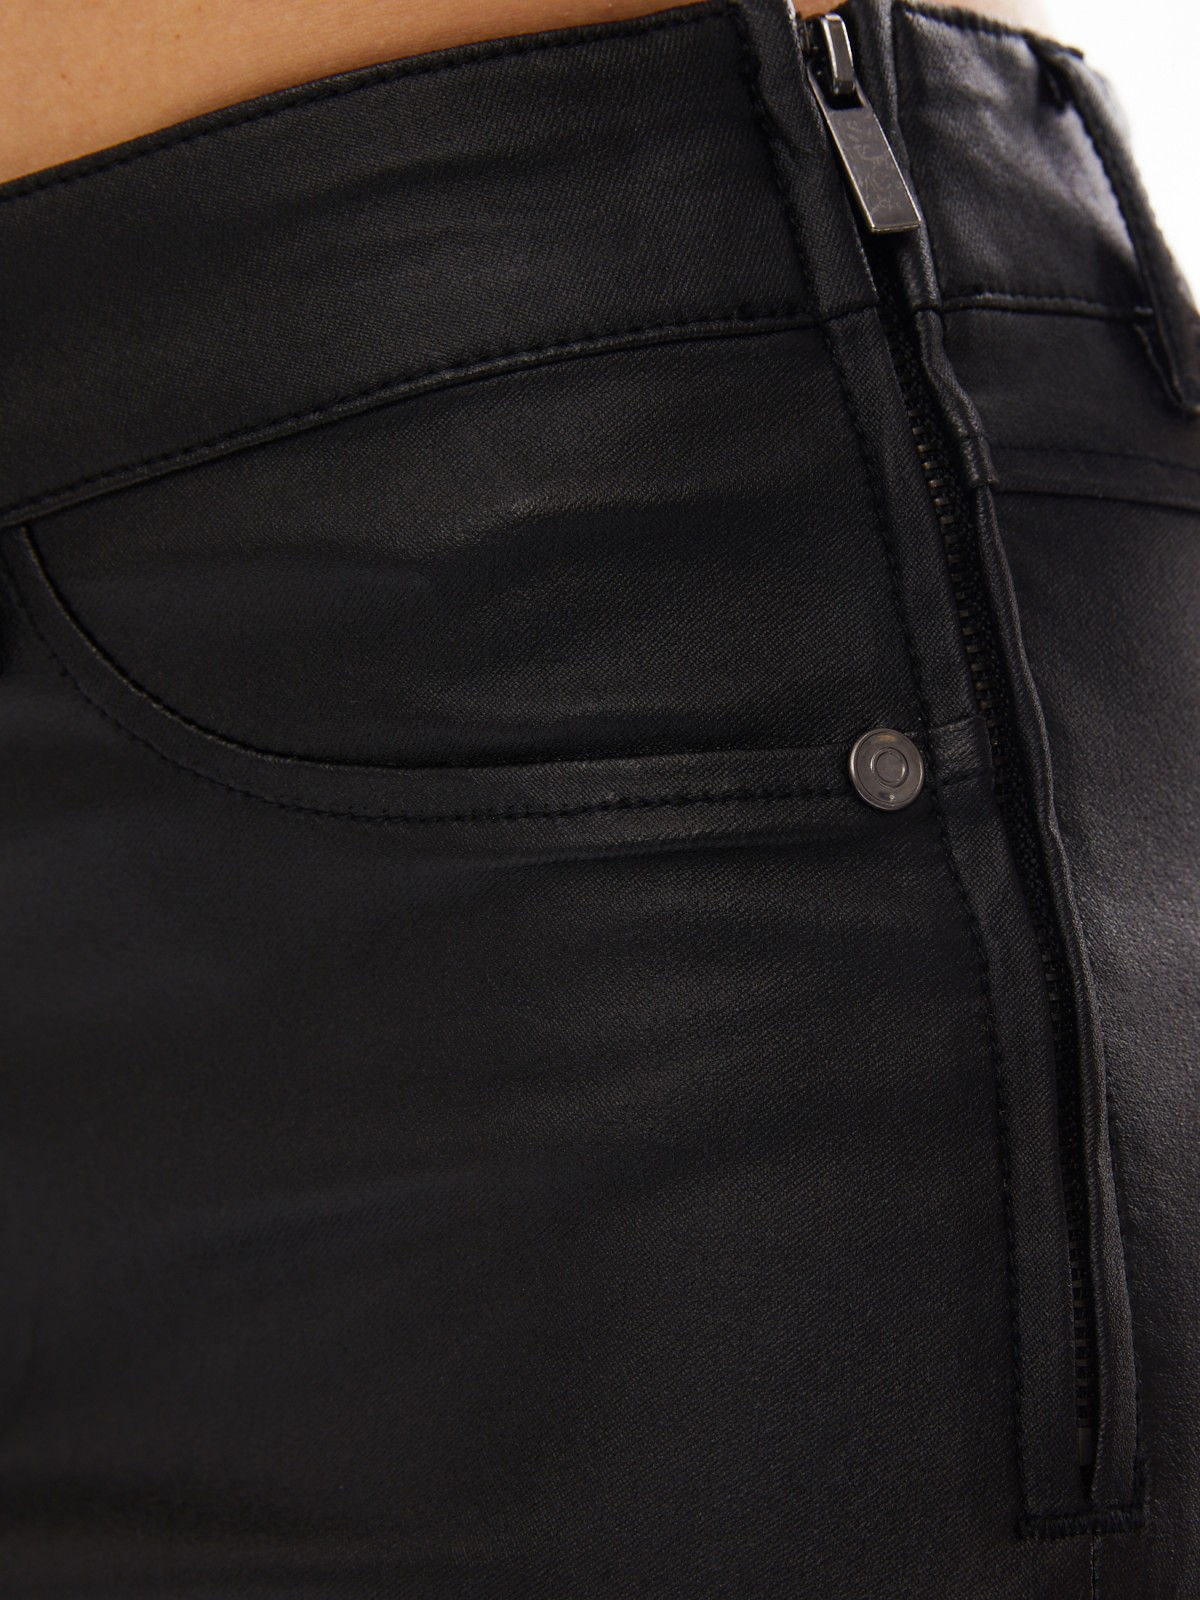 Брюки Skinny из экокожи с акцентной шнуровкой zolla 024117328133, цвет черный, размер XS - фото 6